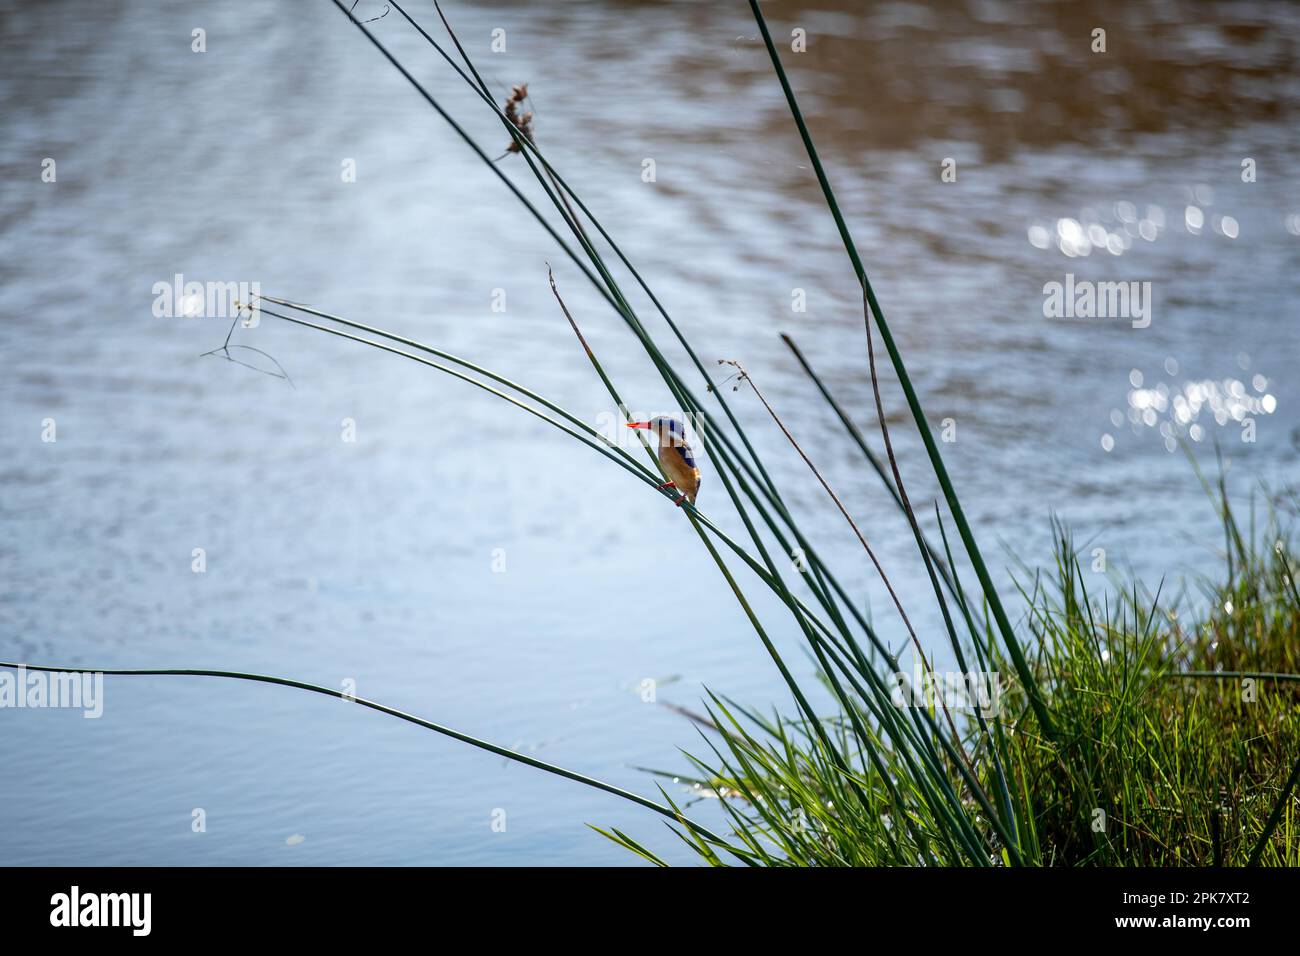 Un Kingfisher malachite, Corythornis cristatus, perché sur un roseau, à côté d'une rivière. Banque D'Images